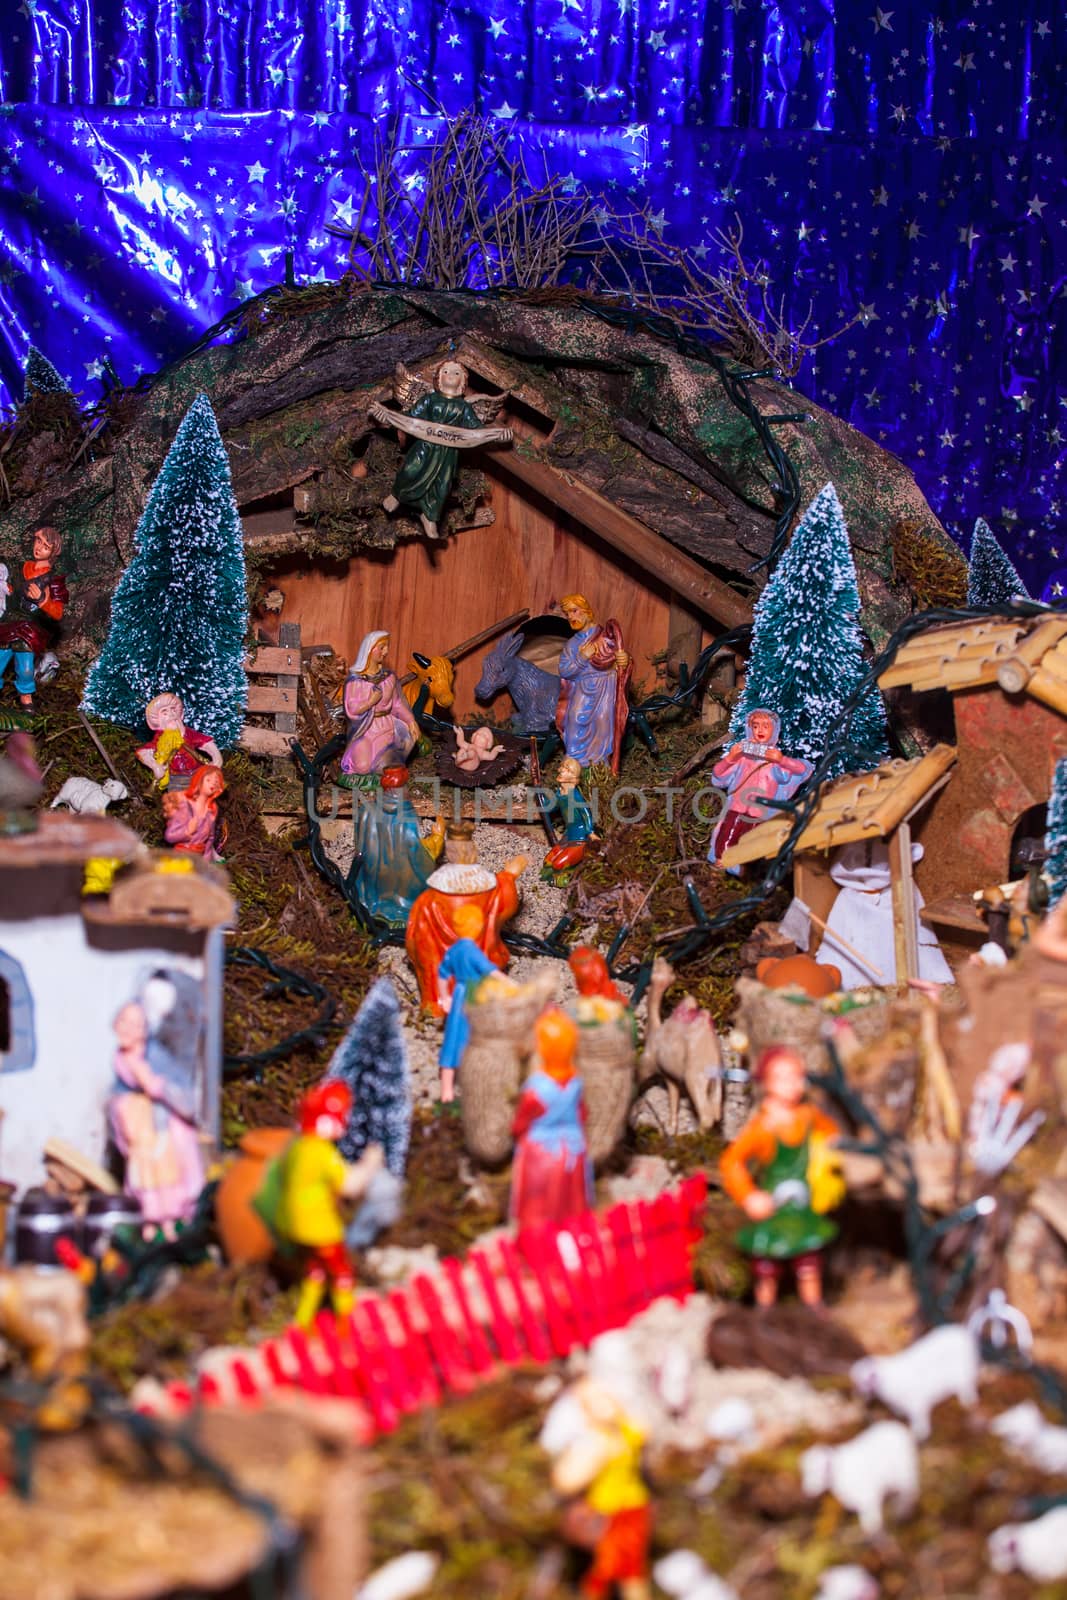 View of nativity scene, in Italian called Presepe